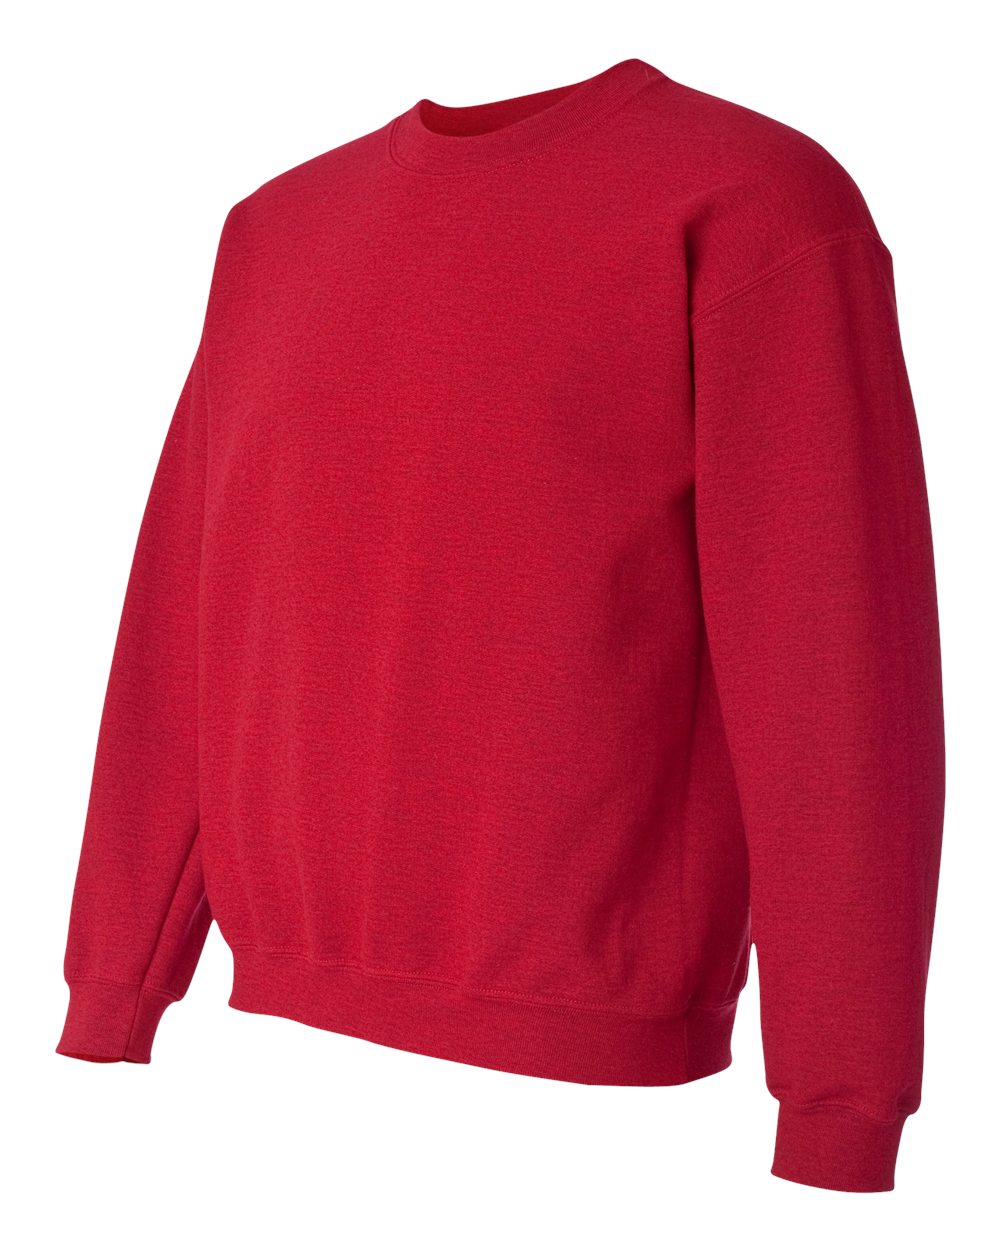 Antique Cherry Red Sweatshirt - T9405RD